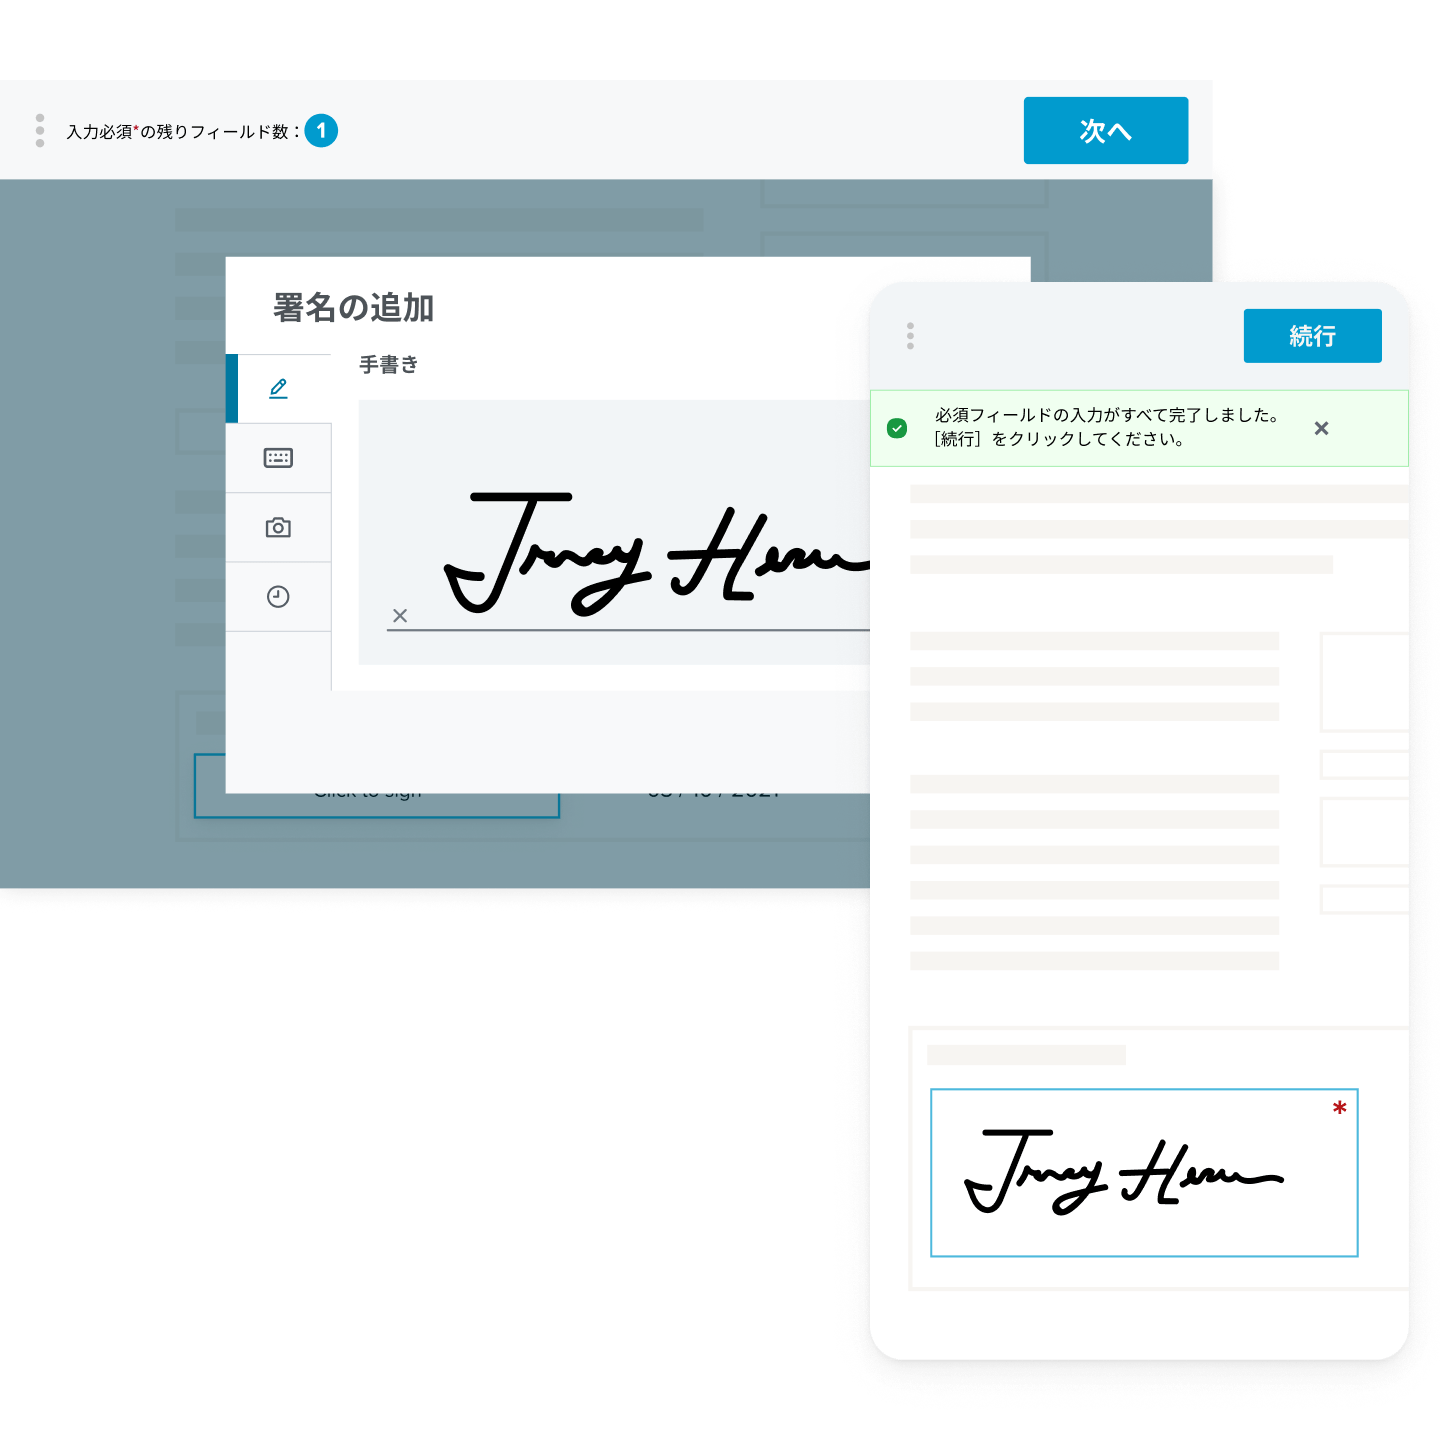 フォームに追加した署名が表示された電子署名インターフェースのデスクトップ版とモバイル デバイス版